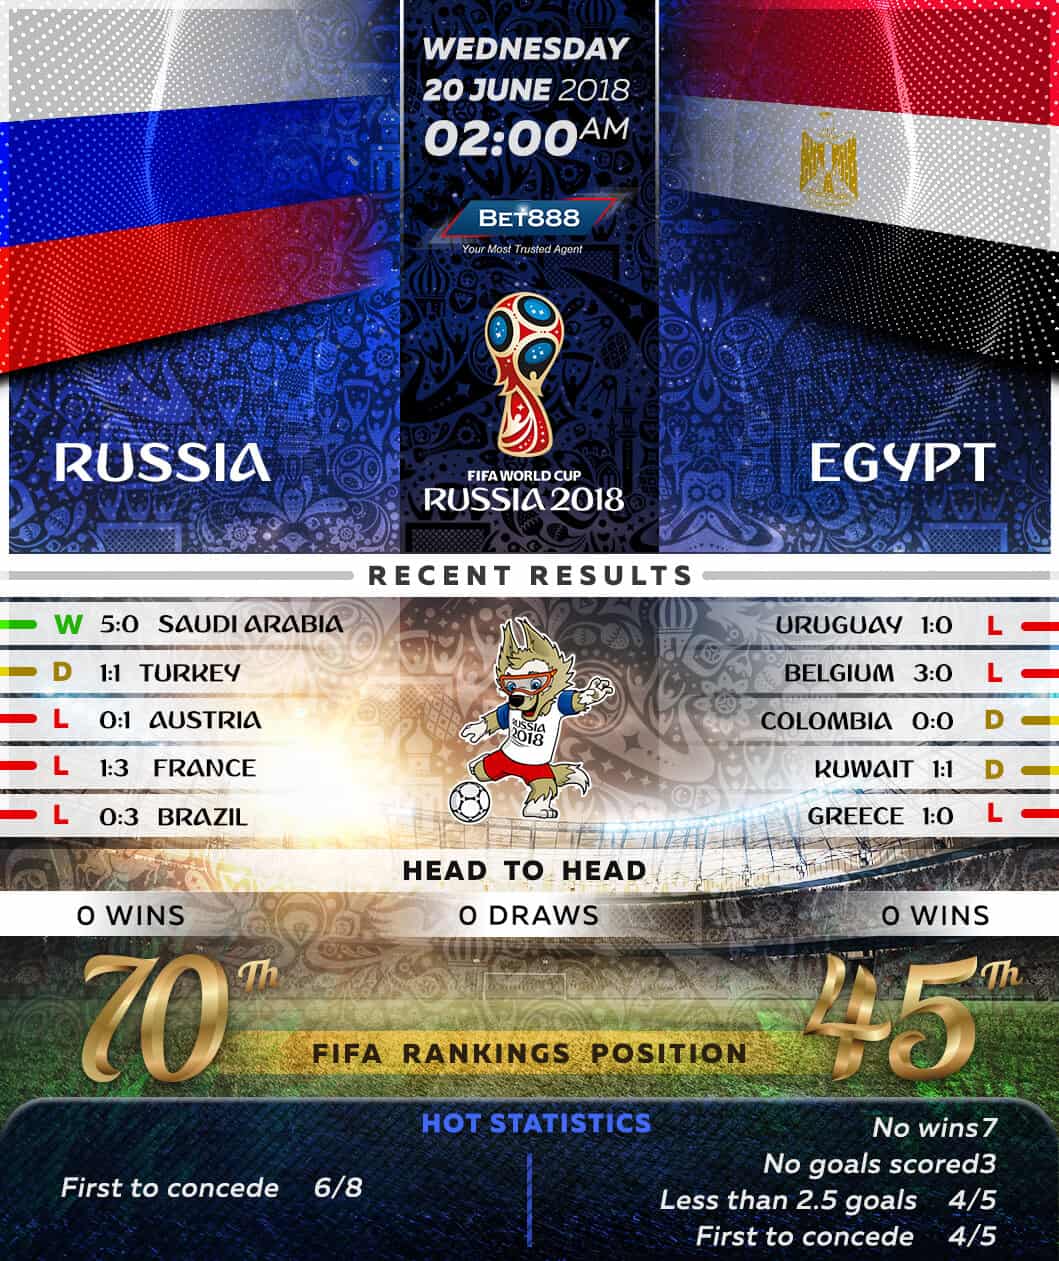 Russia vs Egypt 20/06/18